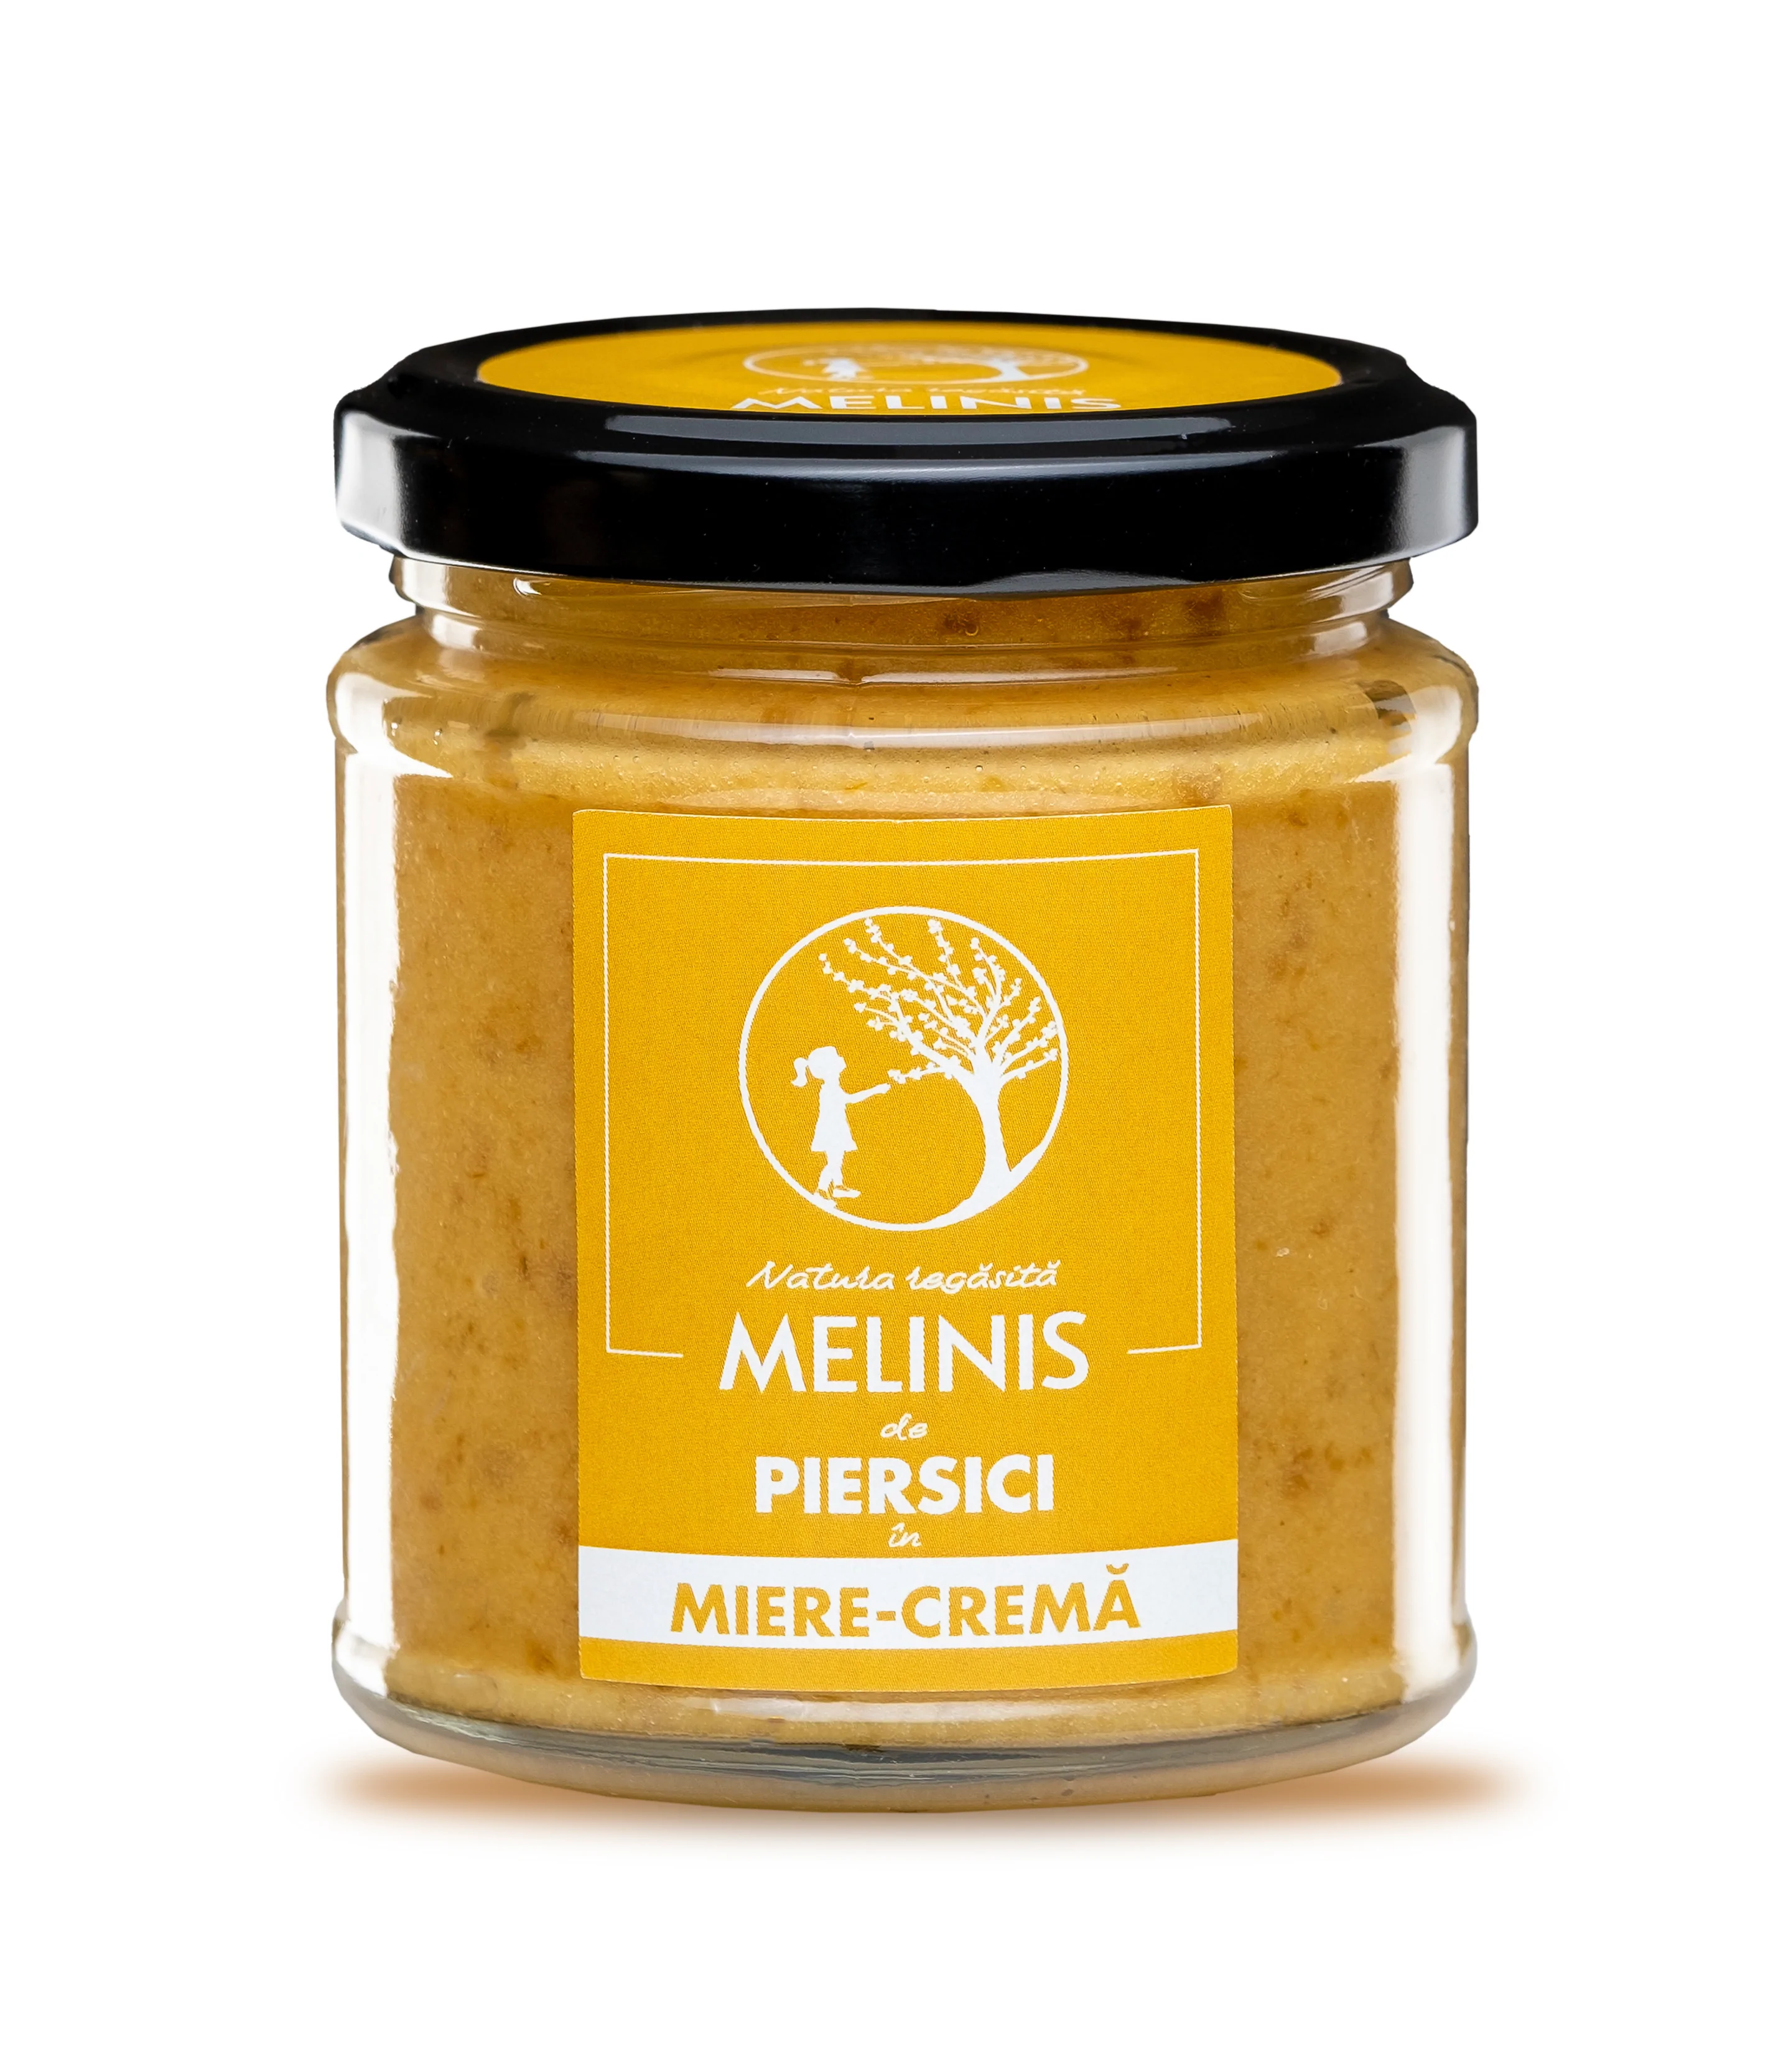 Crema de piersici cu miere poliflora 230g Melinis [0]